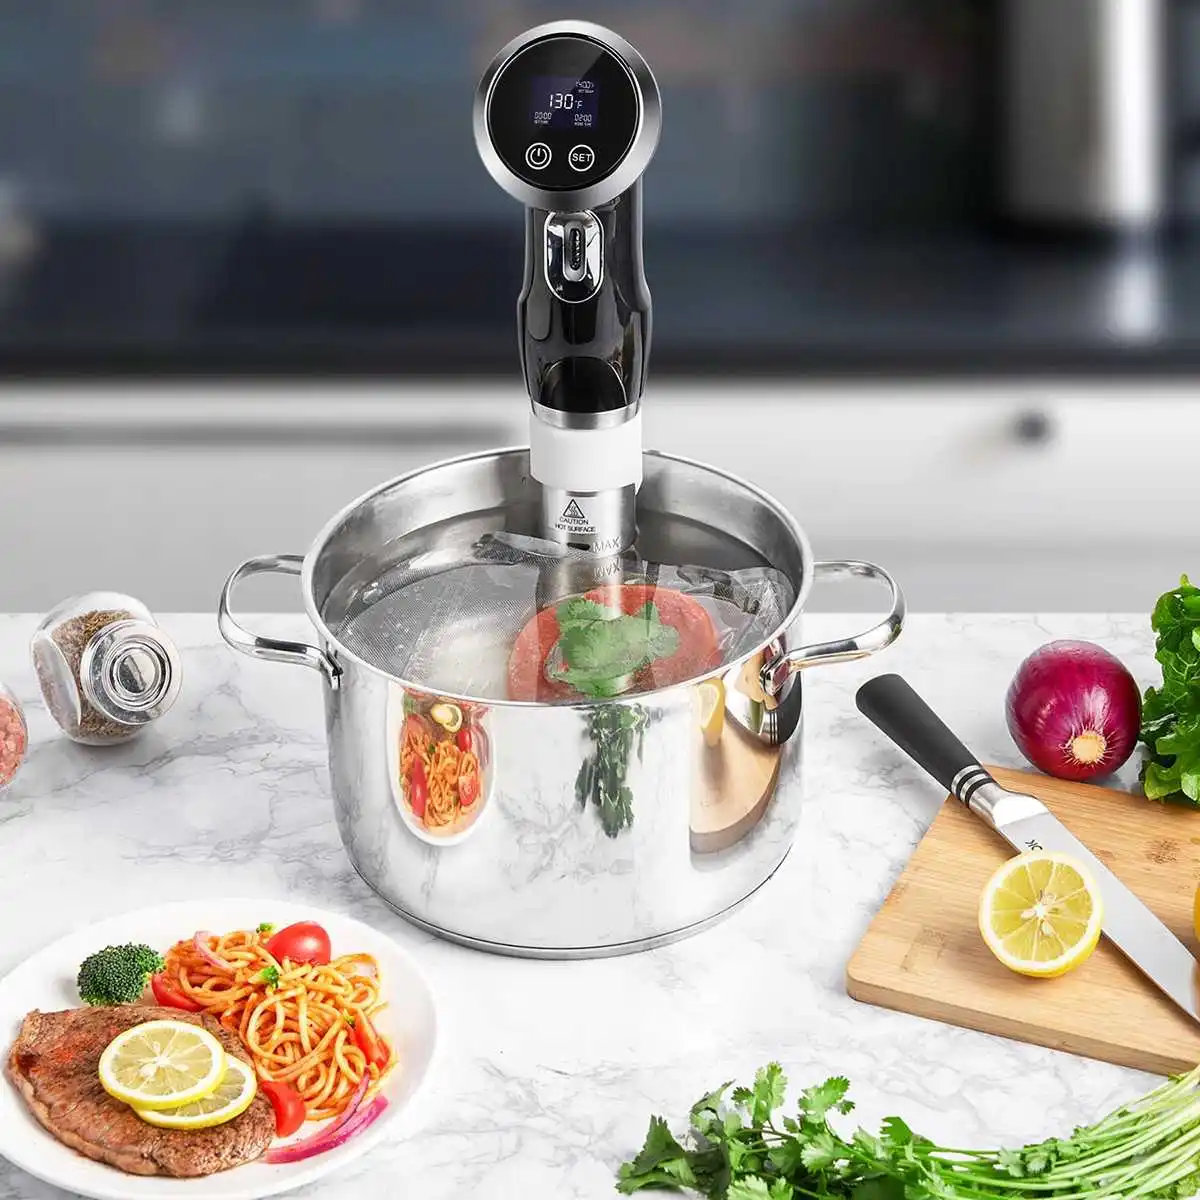 Bolomix пособия по кулинарии приспособления вакуум медленно Sous Vide плита для готовки мощный погружной Термостат ЖК дисплей цифровой таймер